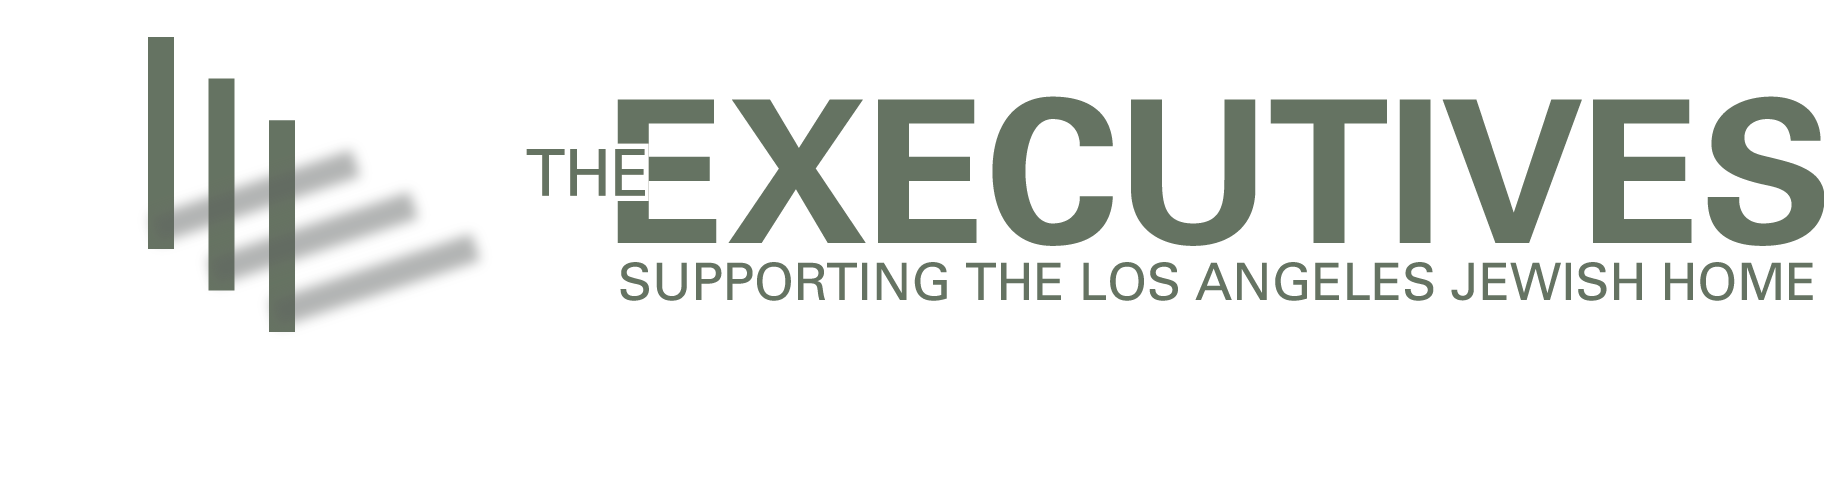 Executives logo high res